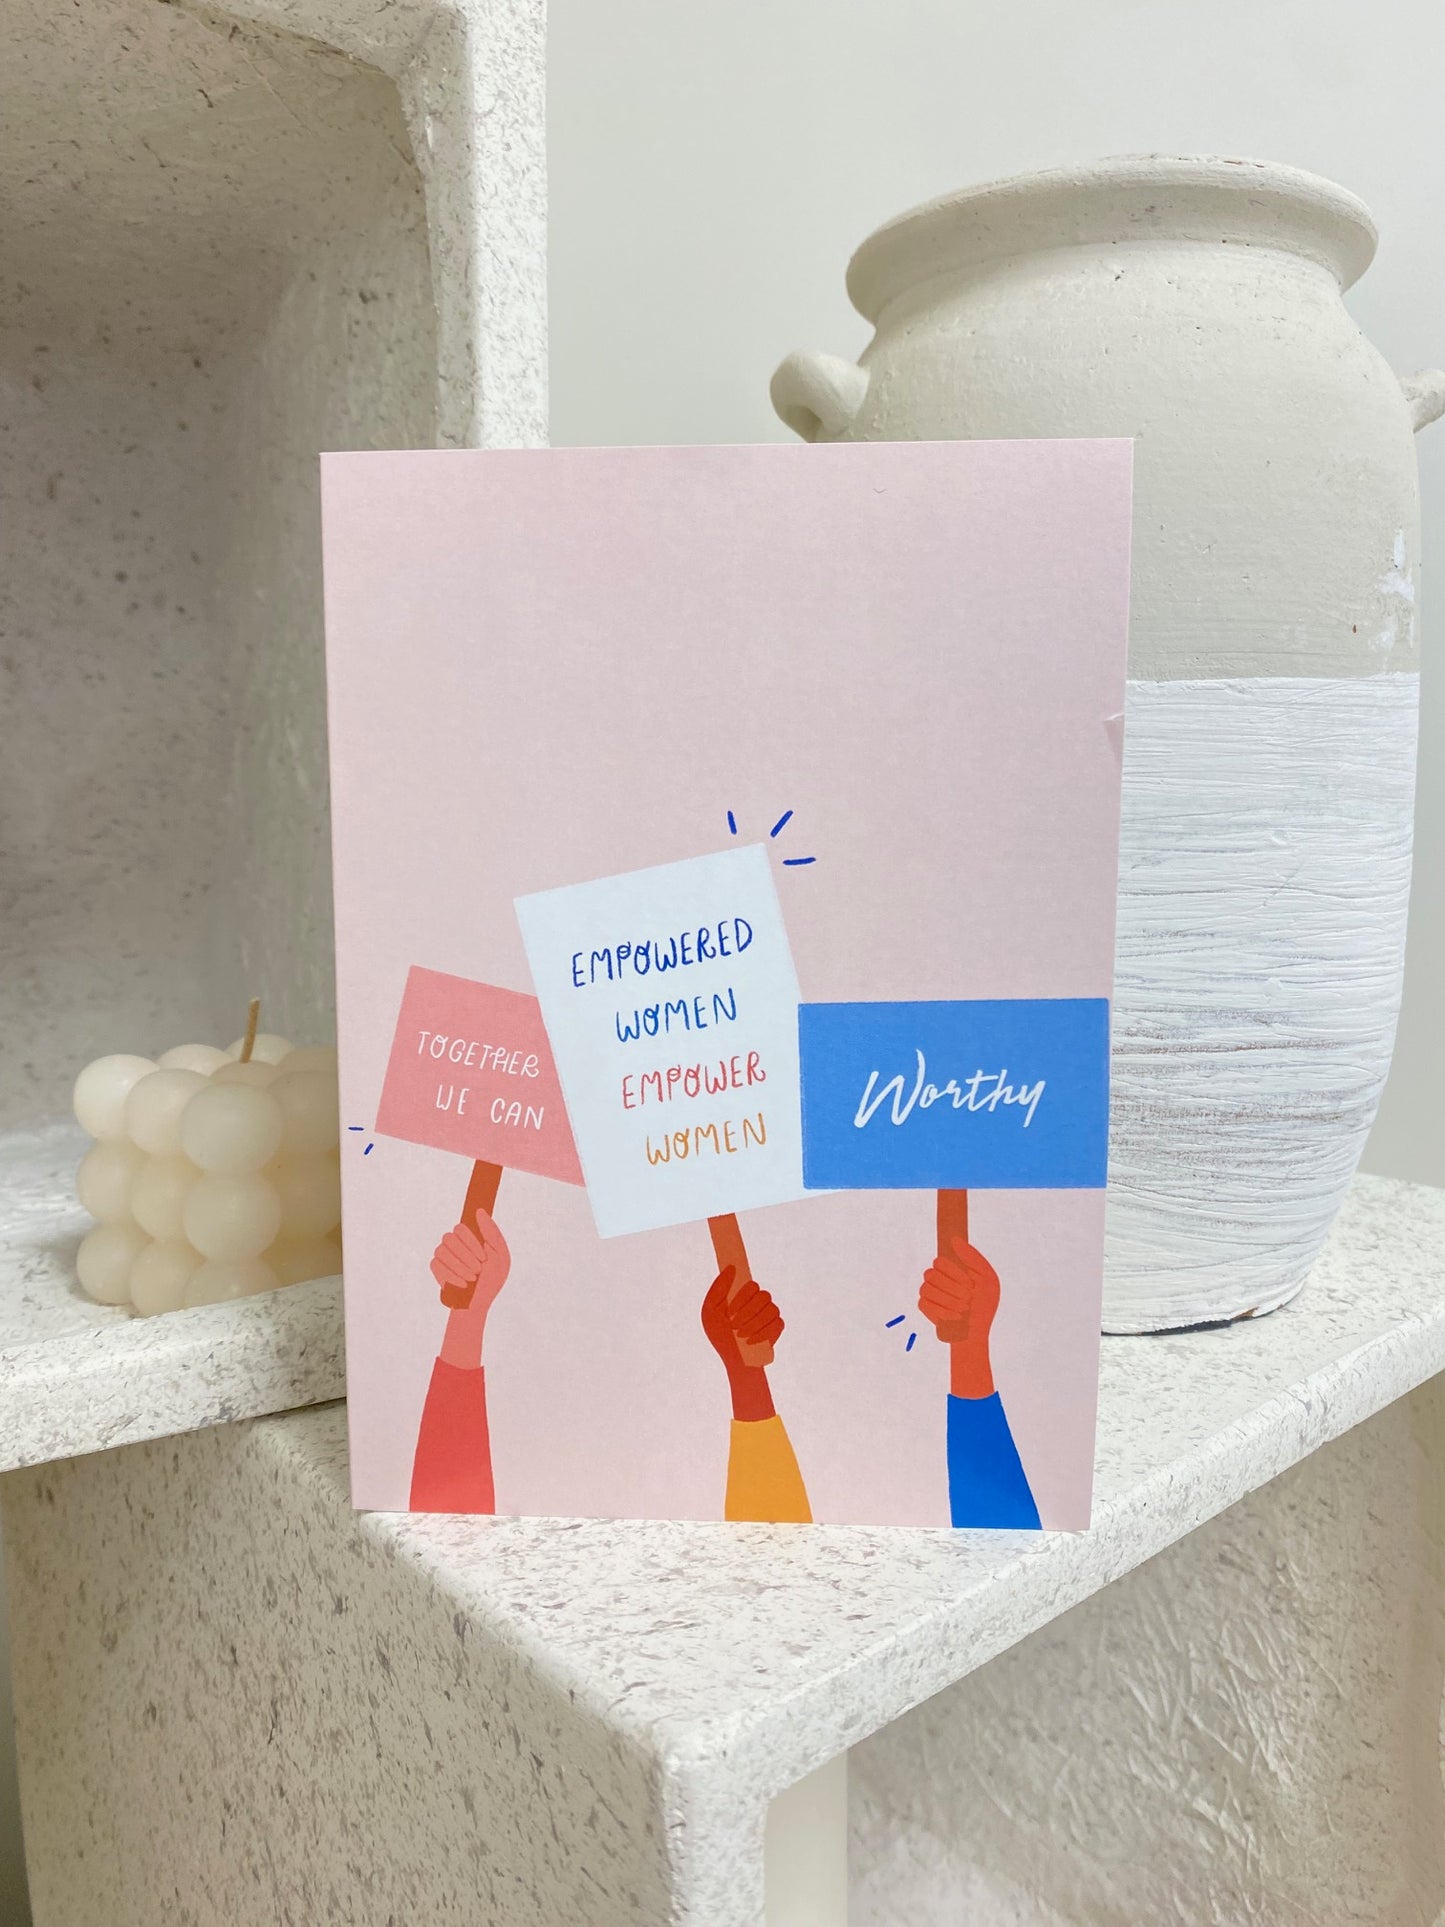 Empowered Women Empower Women - Greeting Card